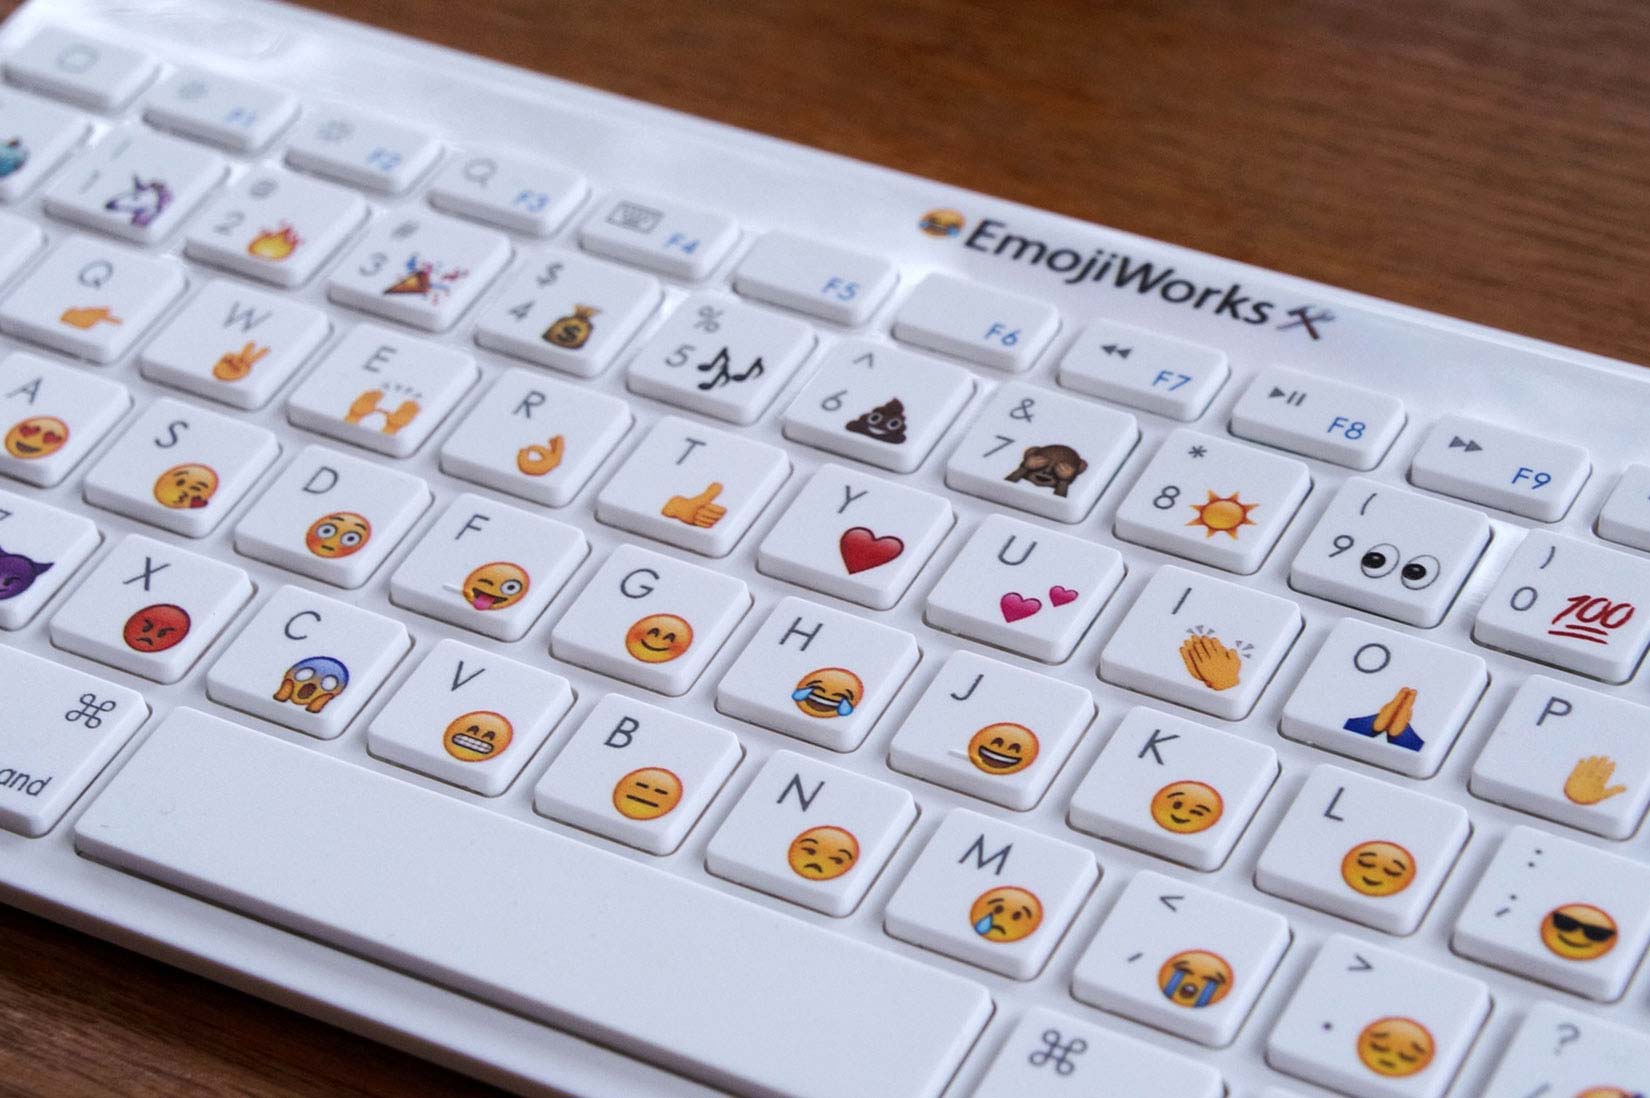 Lanzan primer teclado con emoticones